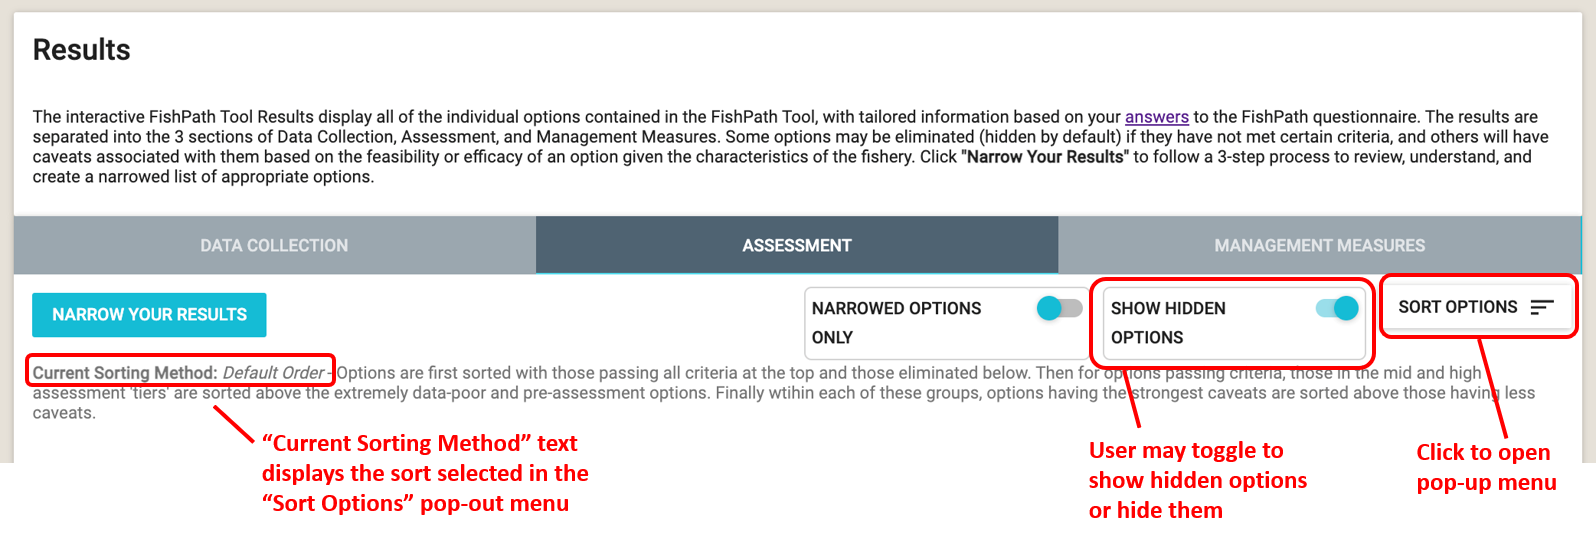 Página de resultados con el botón de “Mostrar opciones escondidas” y “Ordenar opciones” dentro de un circulo rojo.